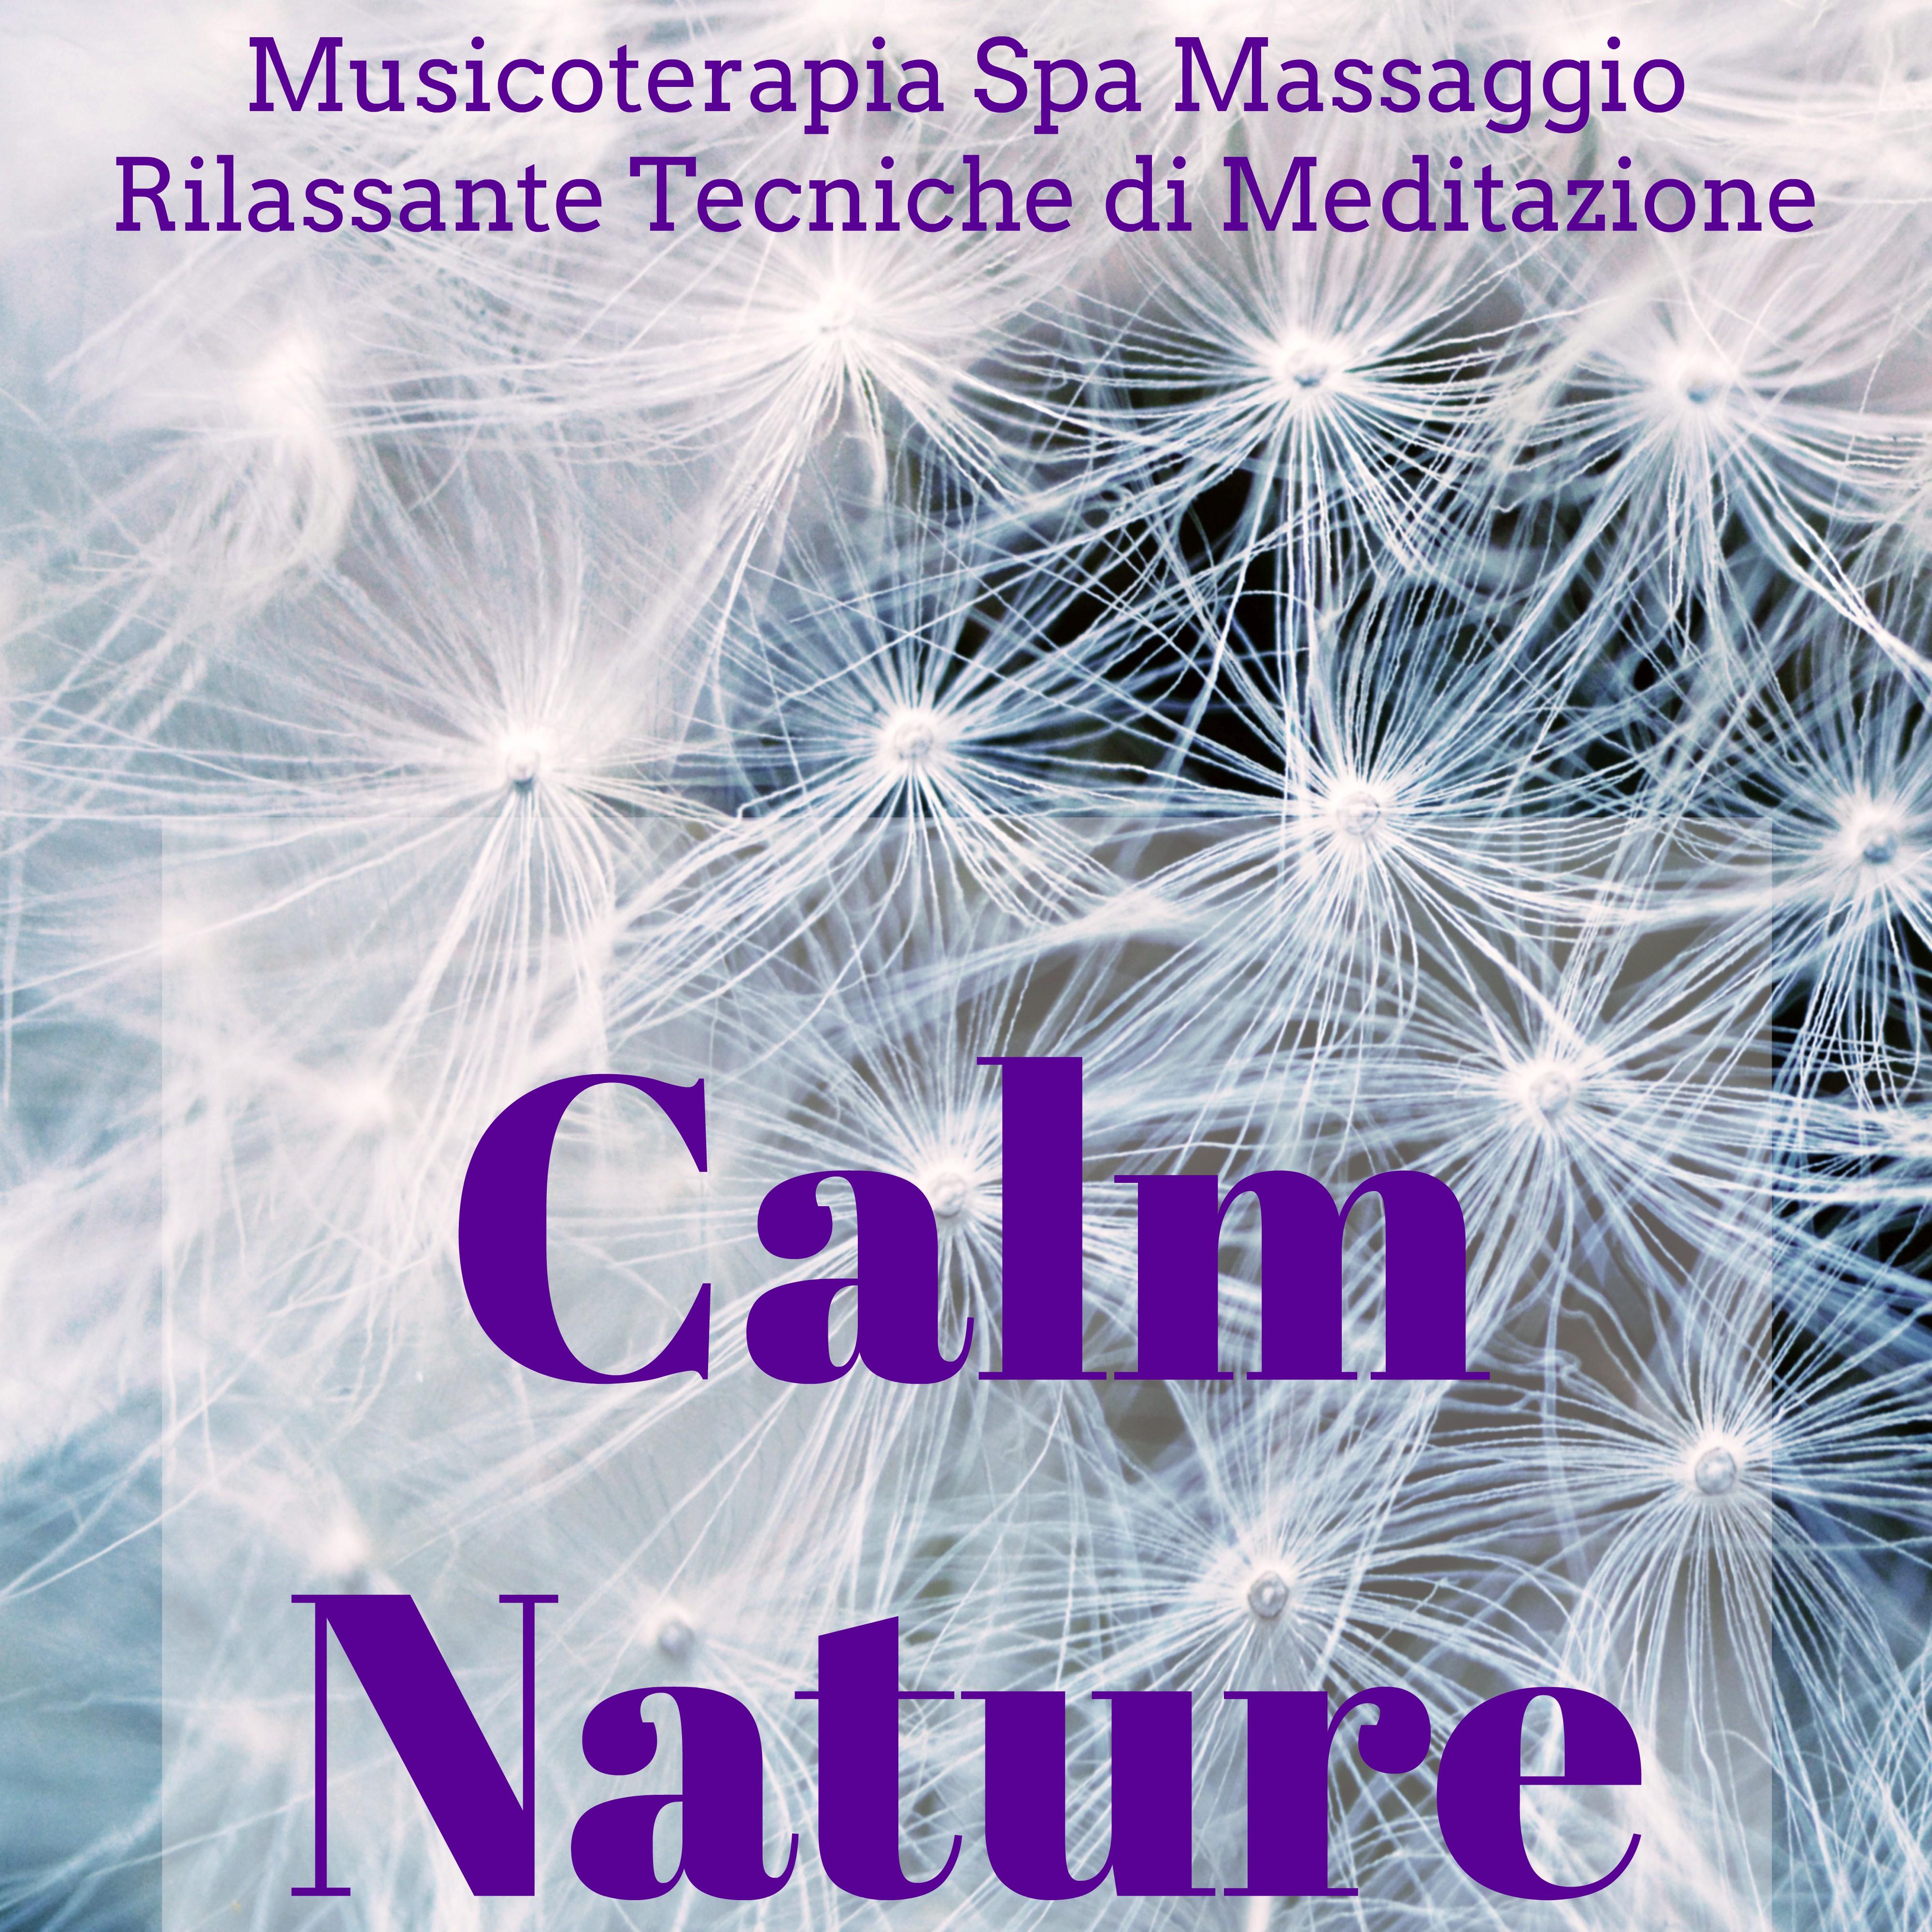 Calm Nature - Musicoterapia Spa Massaggio Rilassante Centro Benessere e Tecniche di Meditazione con Suoni della Natura New Age Strumentali